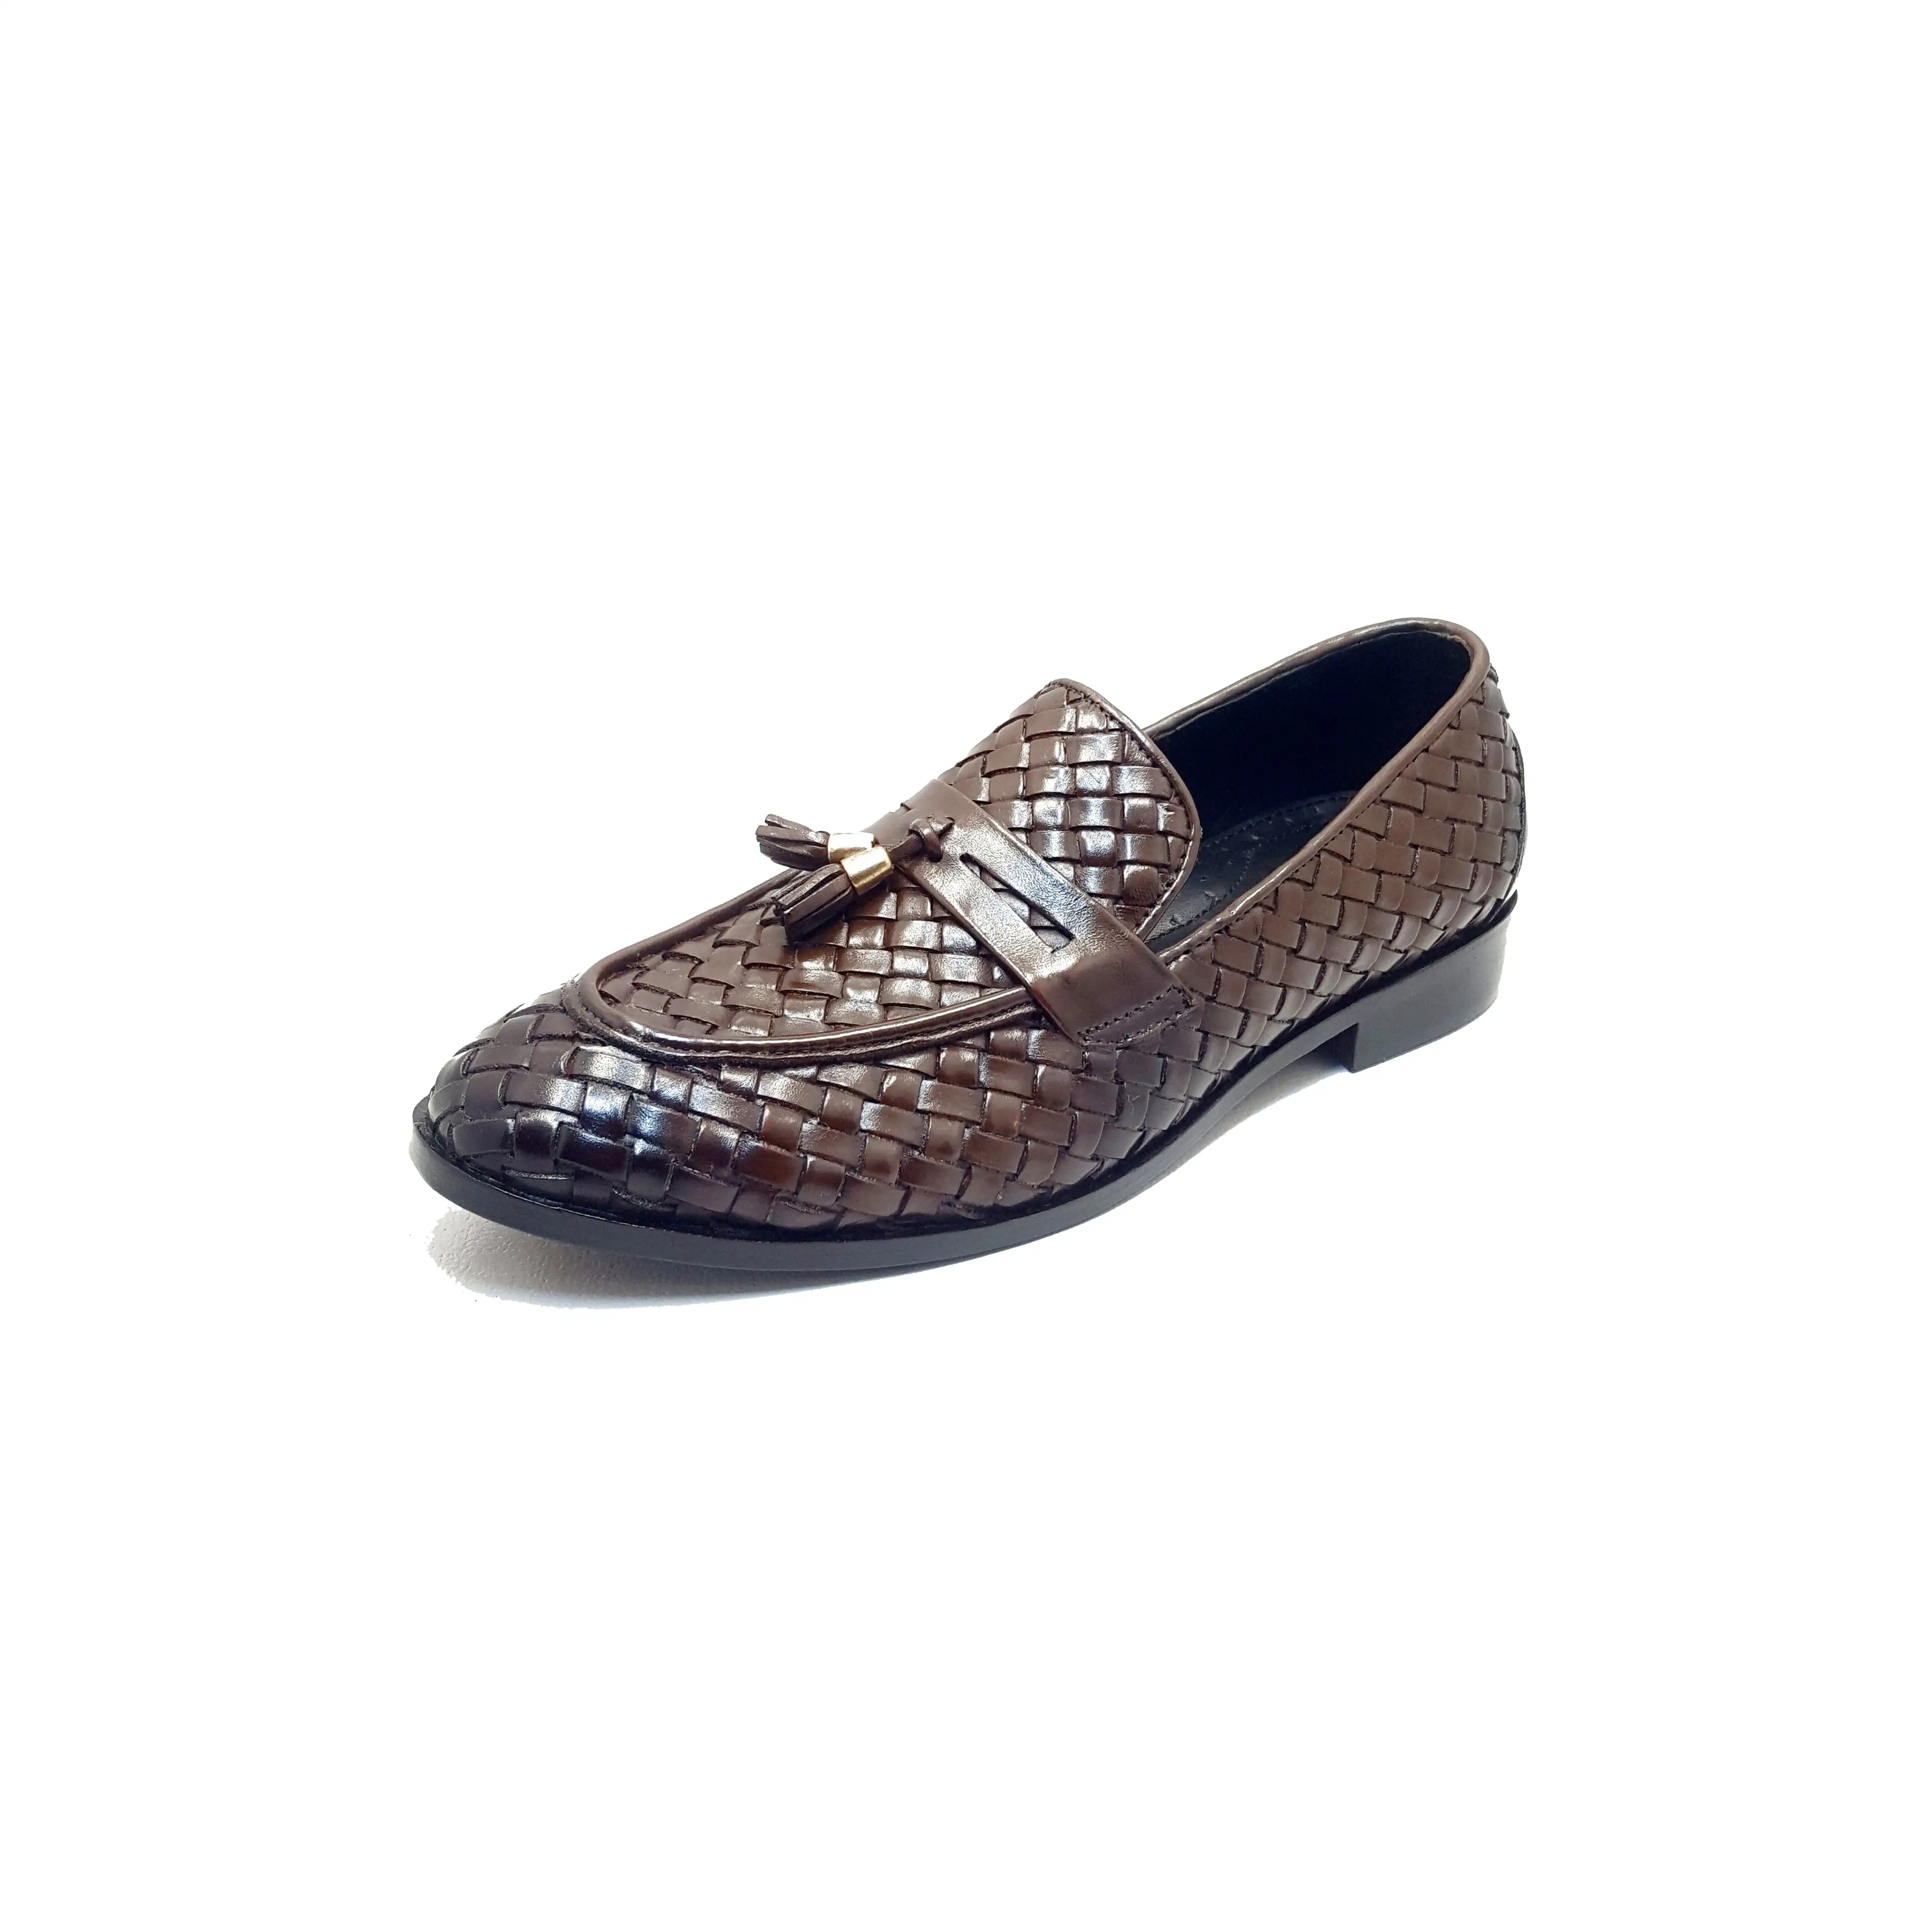 Zapatos planos de cuero con hebilla de metal para hombre, calzado de alta calidad, precio asequible